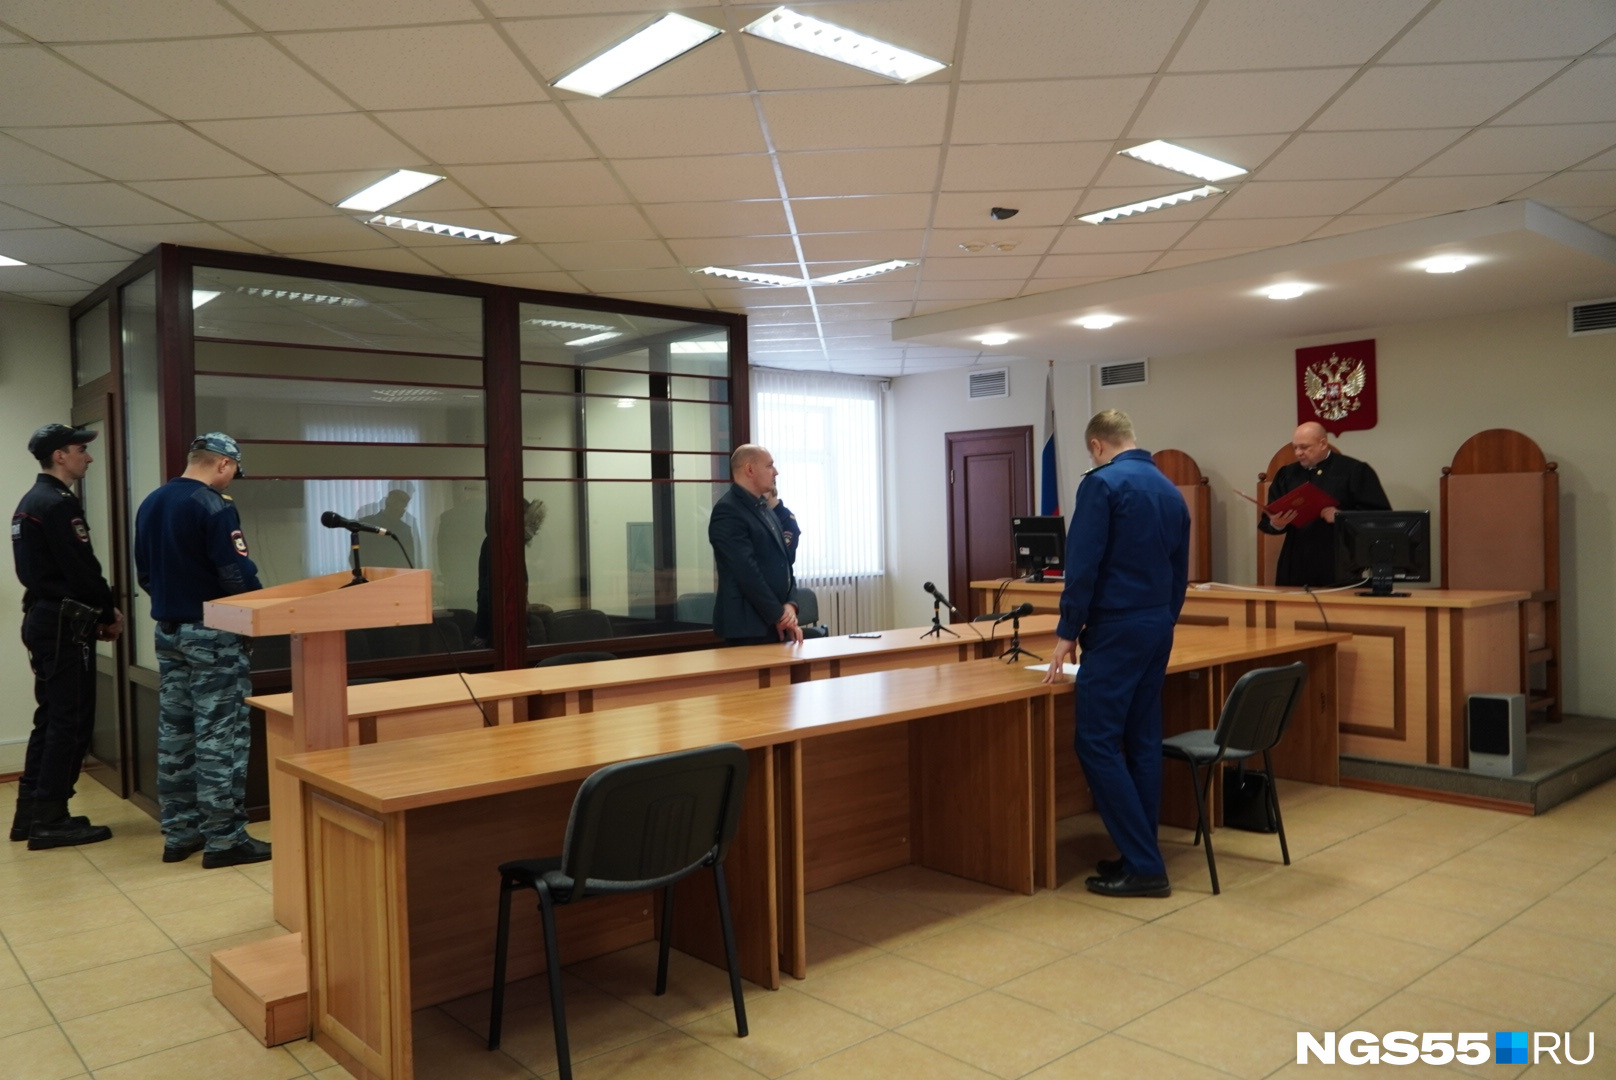 На сегодняшнем заседании говорил только судья. Николай Гаркуша признал правоту обвинения, но немного смягчил наказание